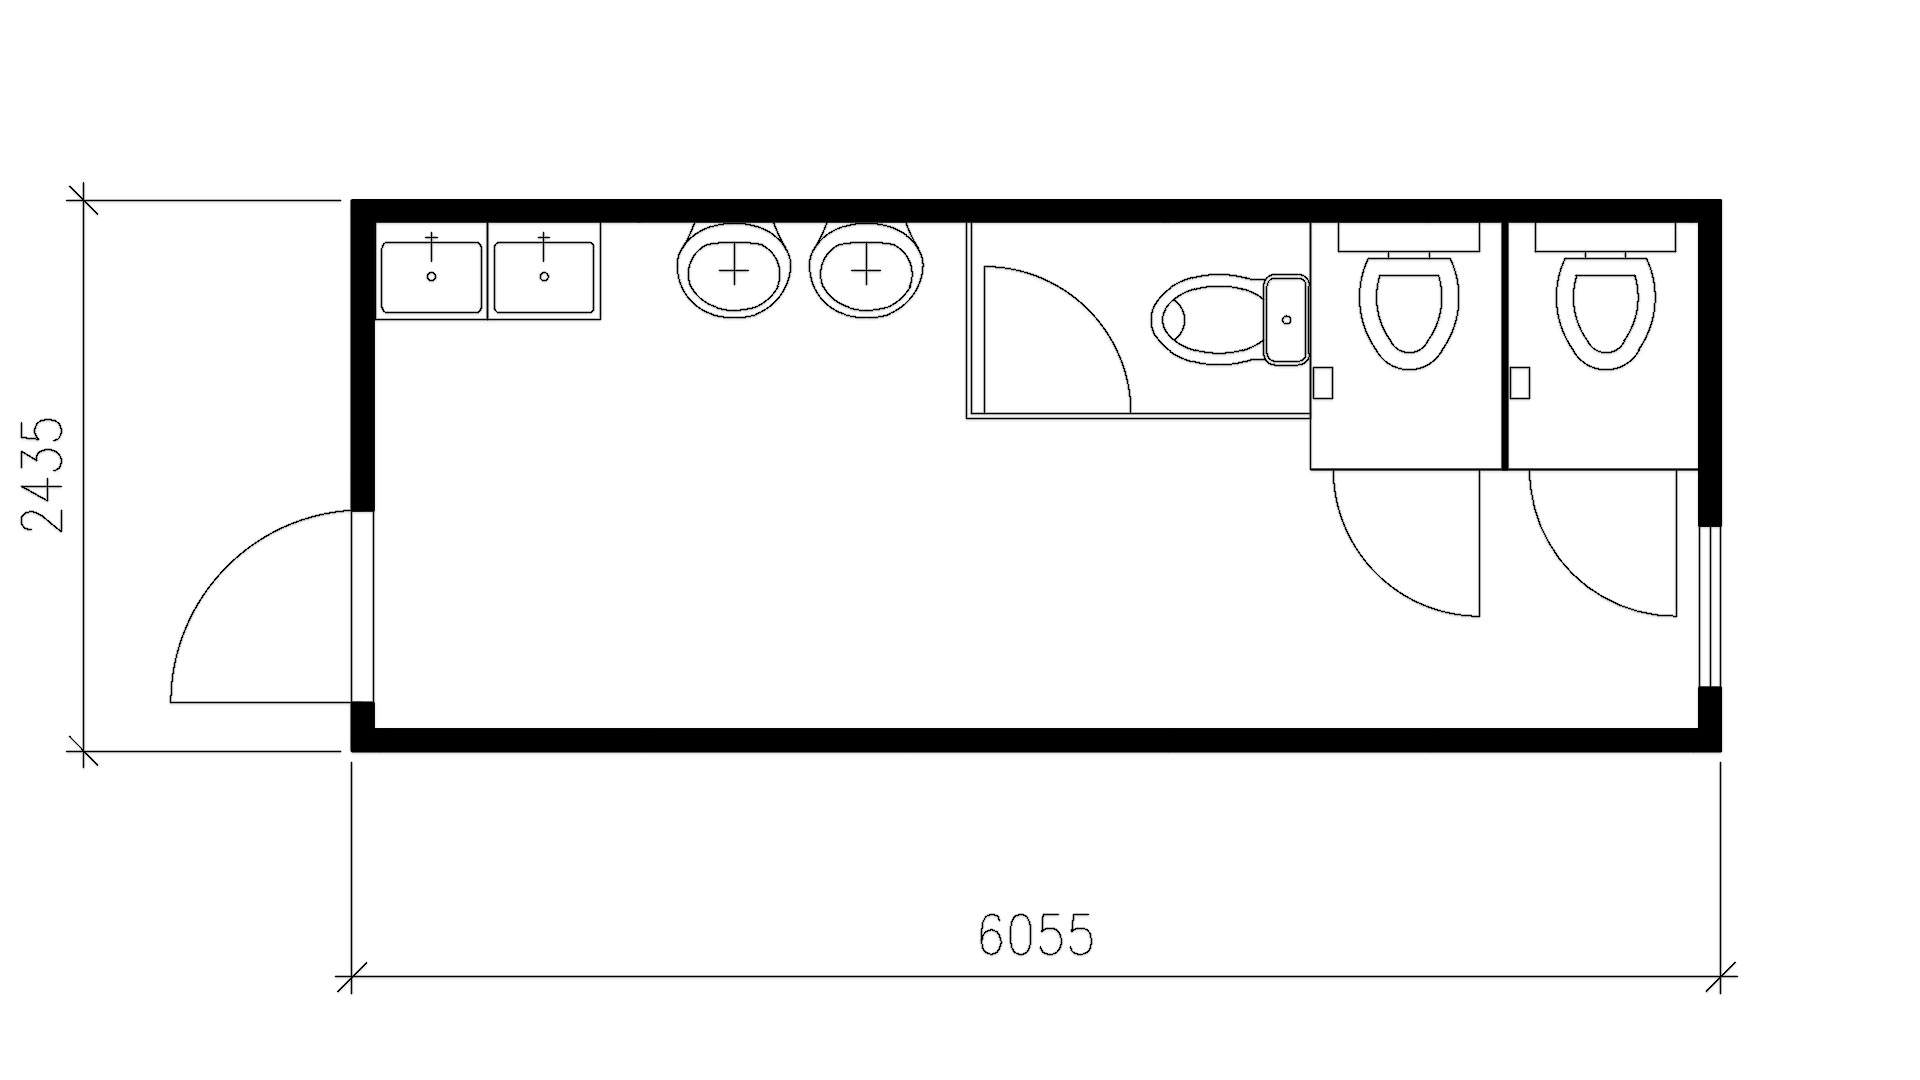 Планировка блок-контейнера туалет (3 туалетные кабины, 4 рукомойника) 20-футов, размеры: 6055/2435/2750 (Д/Ш/В) мм